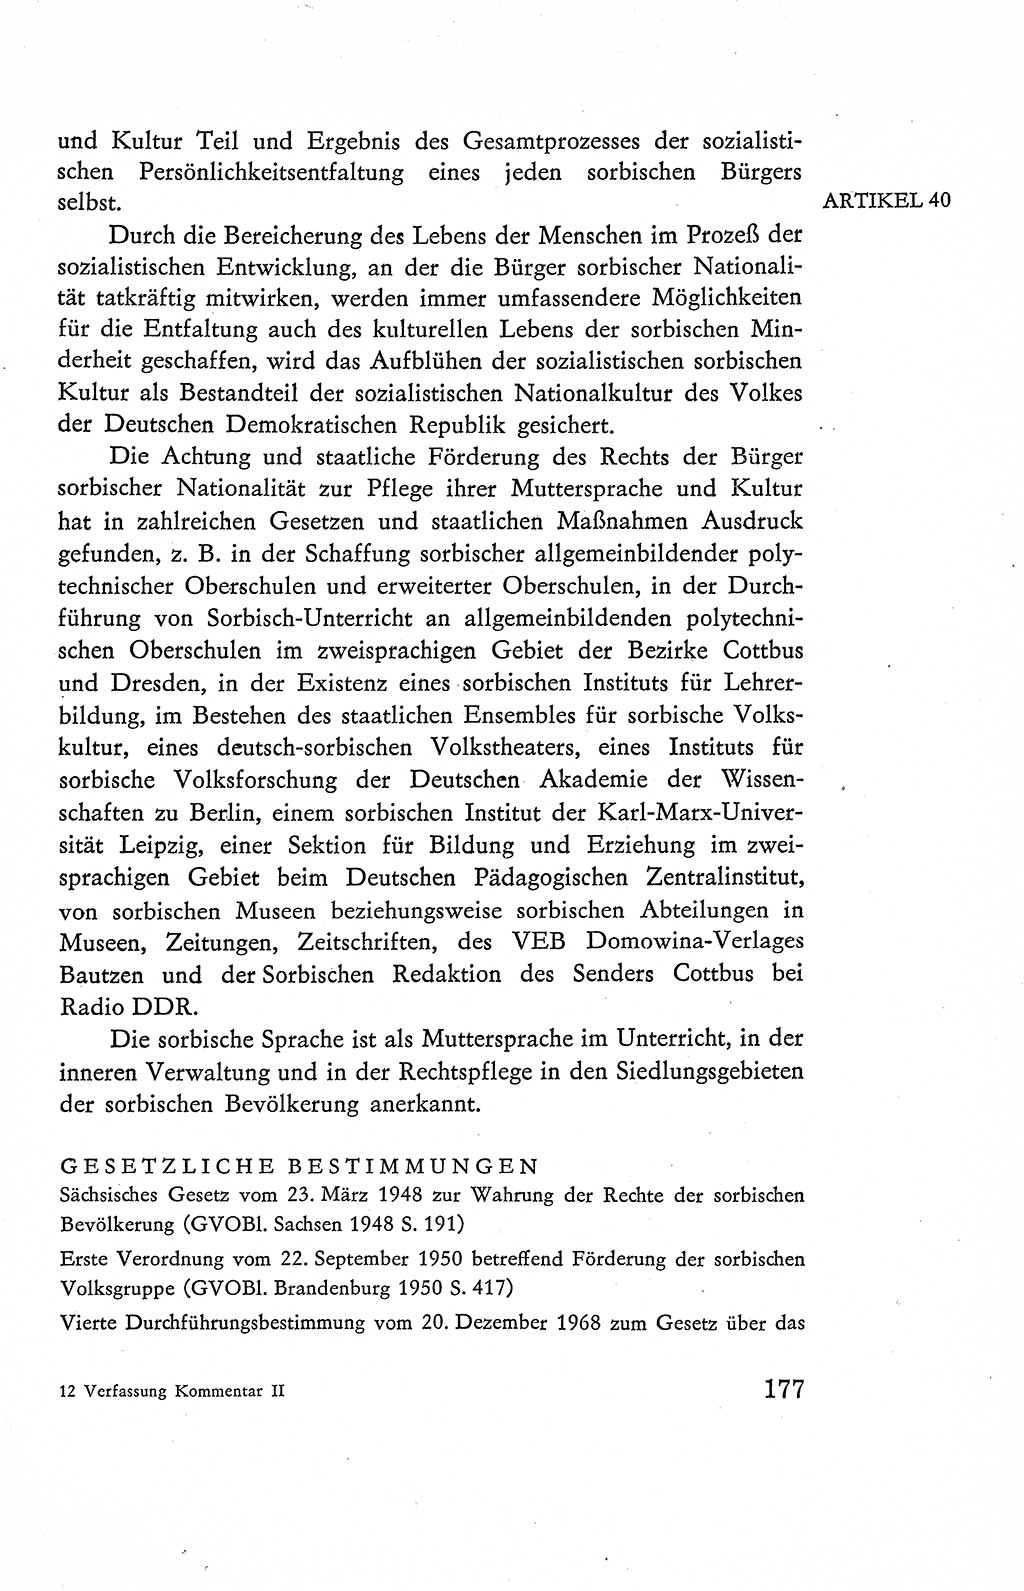 Verfassung der Deutschen Demokratischen Republik (DDR), Dokumente, Kommentar 1969, Band 2, Seite 177 (Verf. DDR Dok. Komm. 1969, Bd. 2, S. 177)